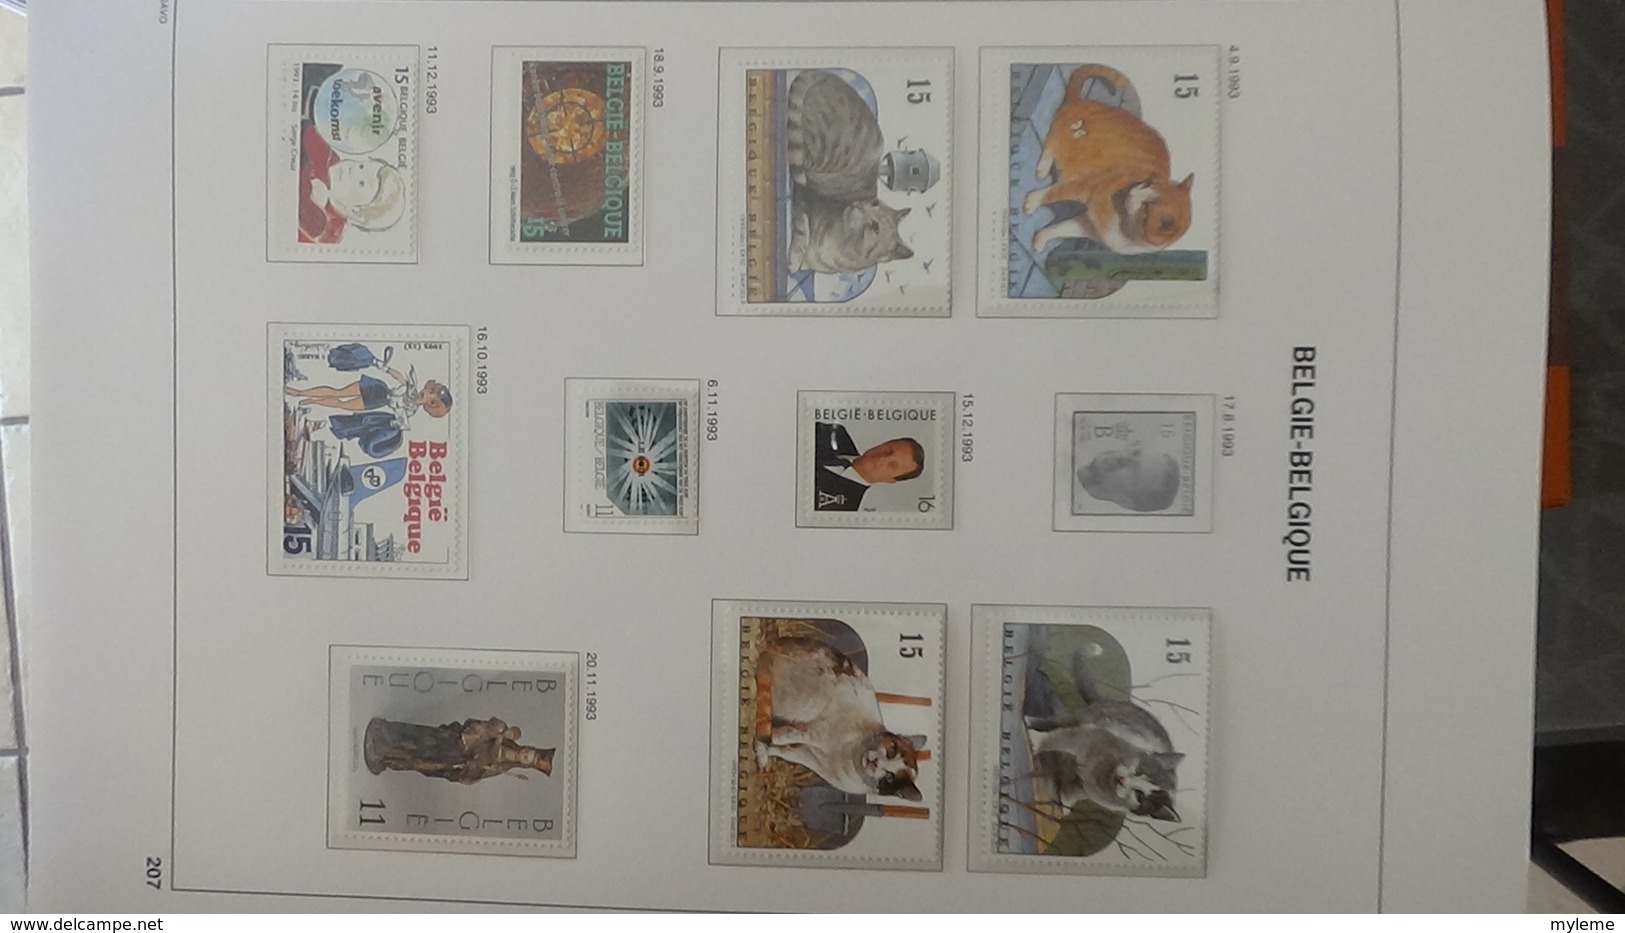 Grosse collection BELGIQUE en DAVO de 1985 à 1998 en blocs, carnets et timbres ** . Bien suivie A saisir !!!